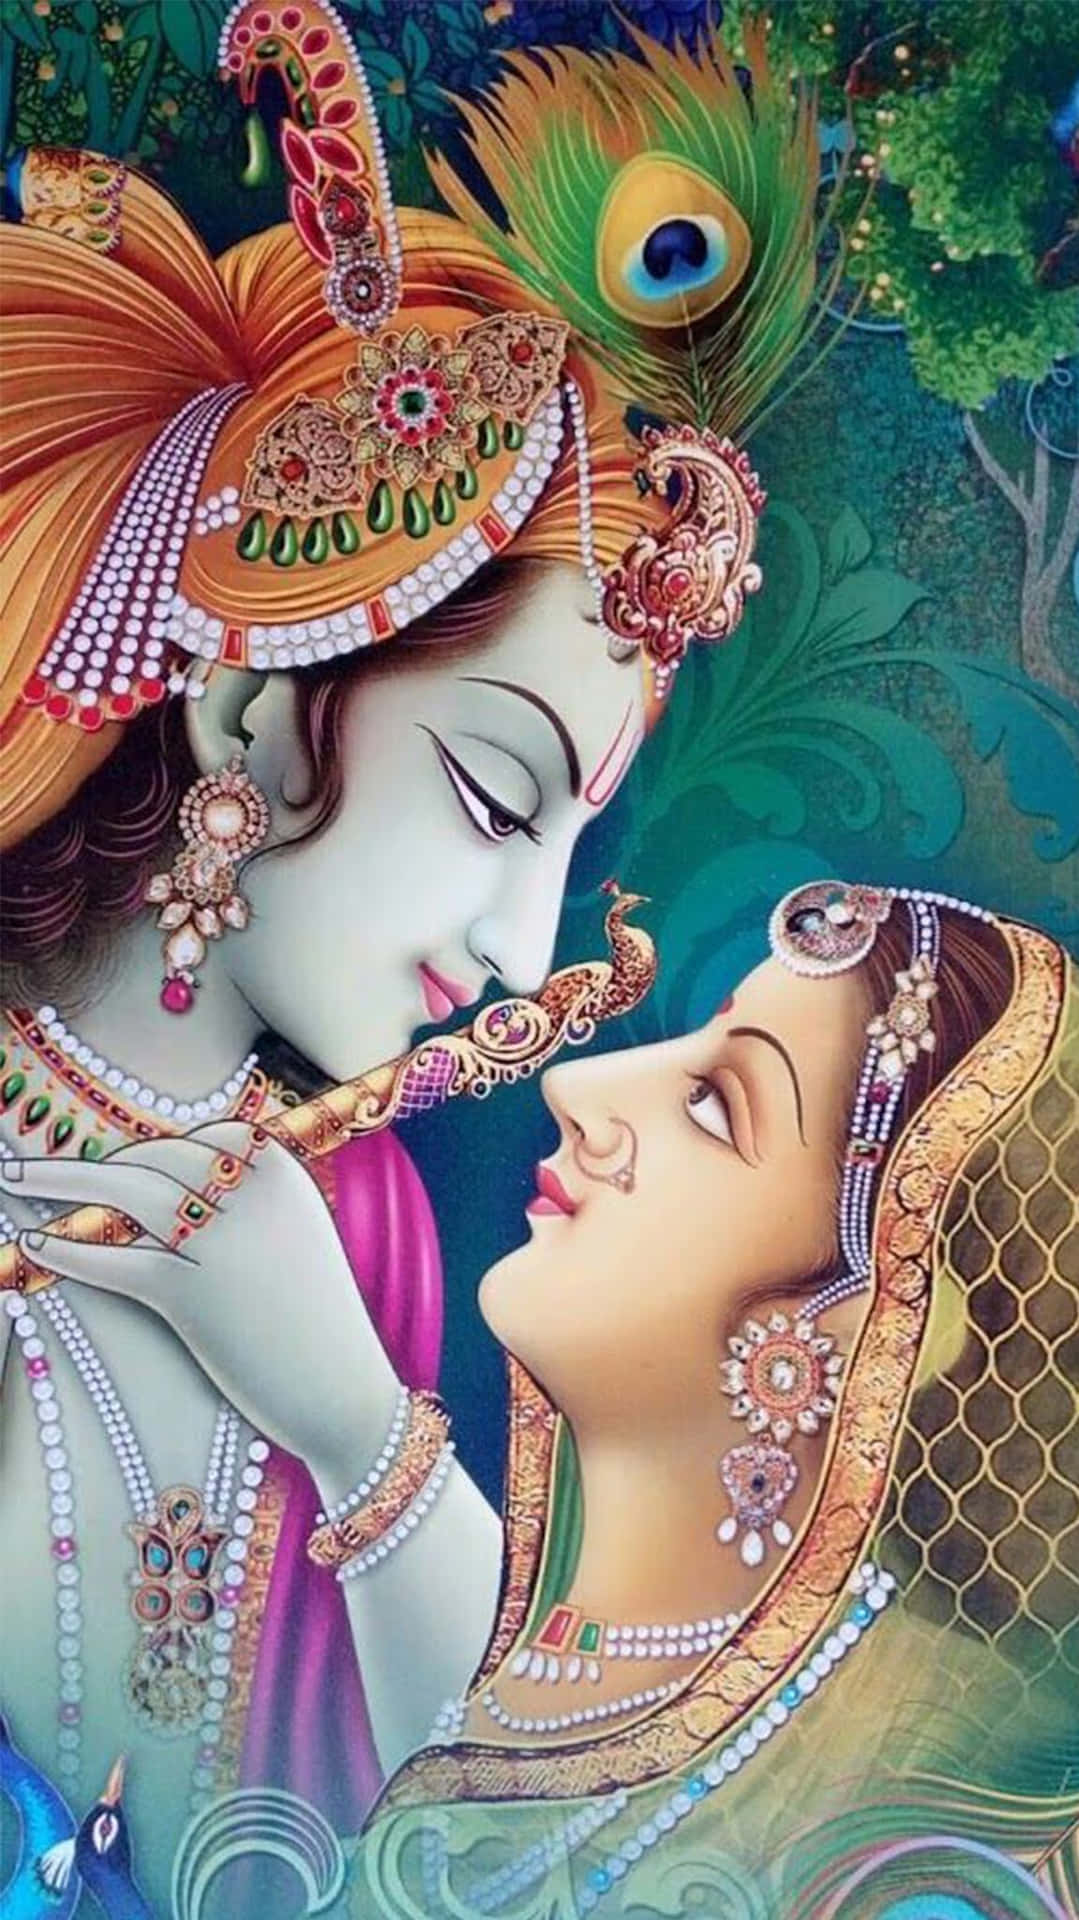 Immagineartistica Colorata Di Radha Krishna.